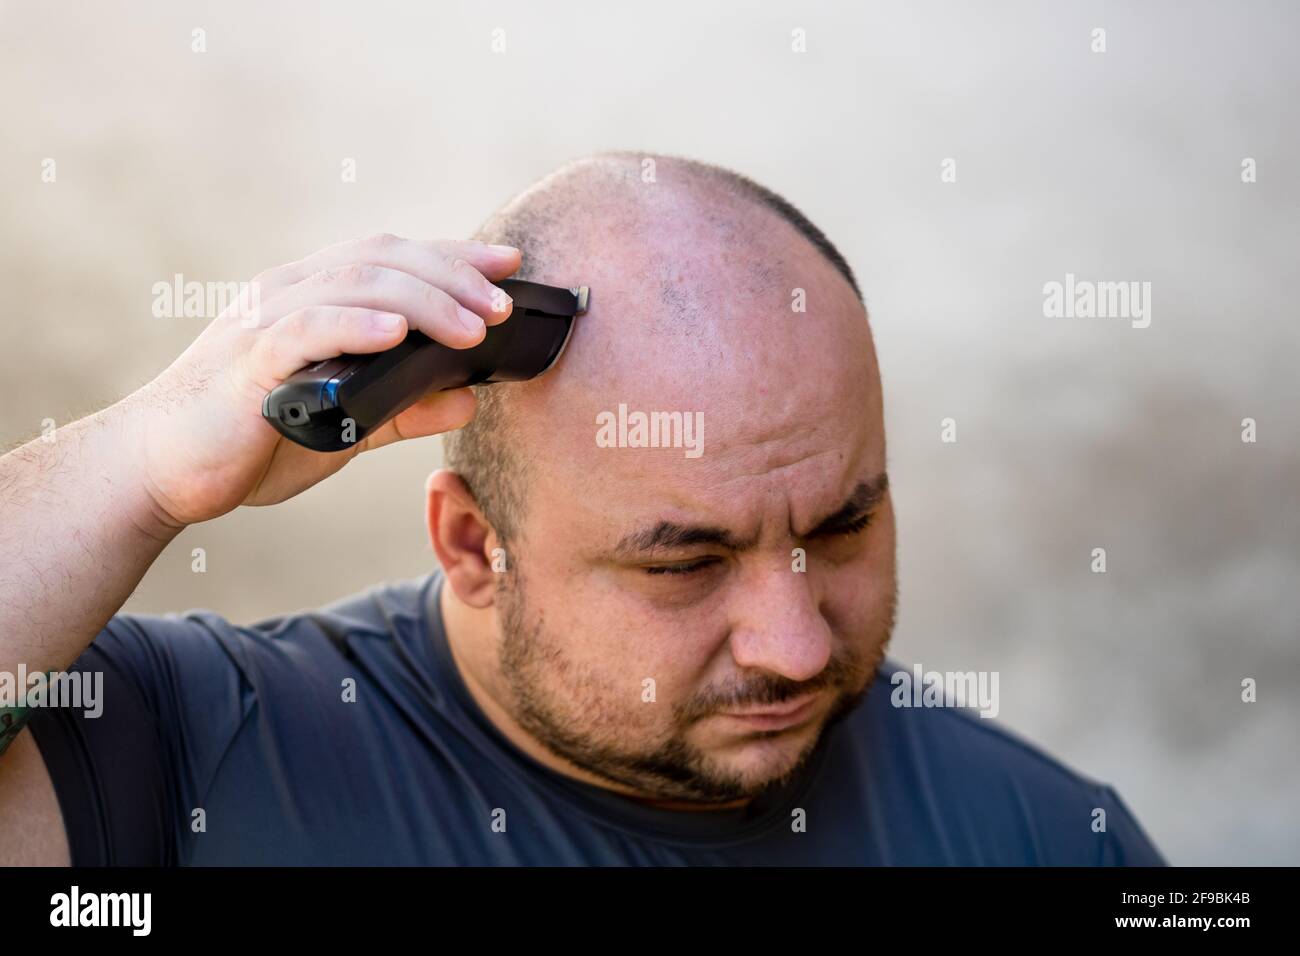 Männer rasieren oder trimmen ihre Haare mit einem Haarschneider Oder  Elektrorasierer Stockfotografie - Alamy